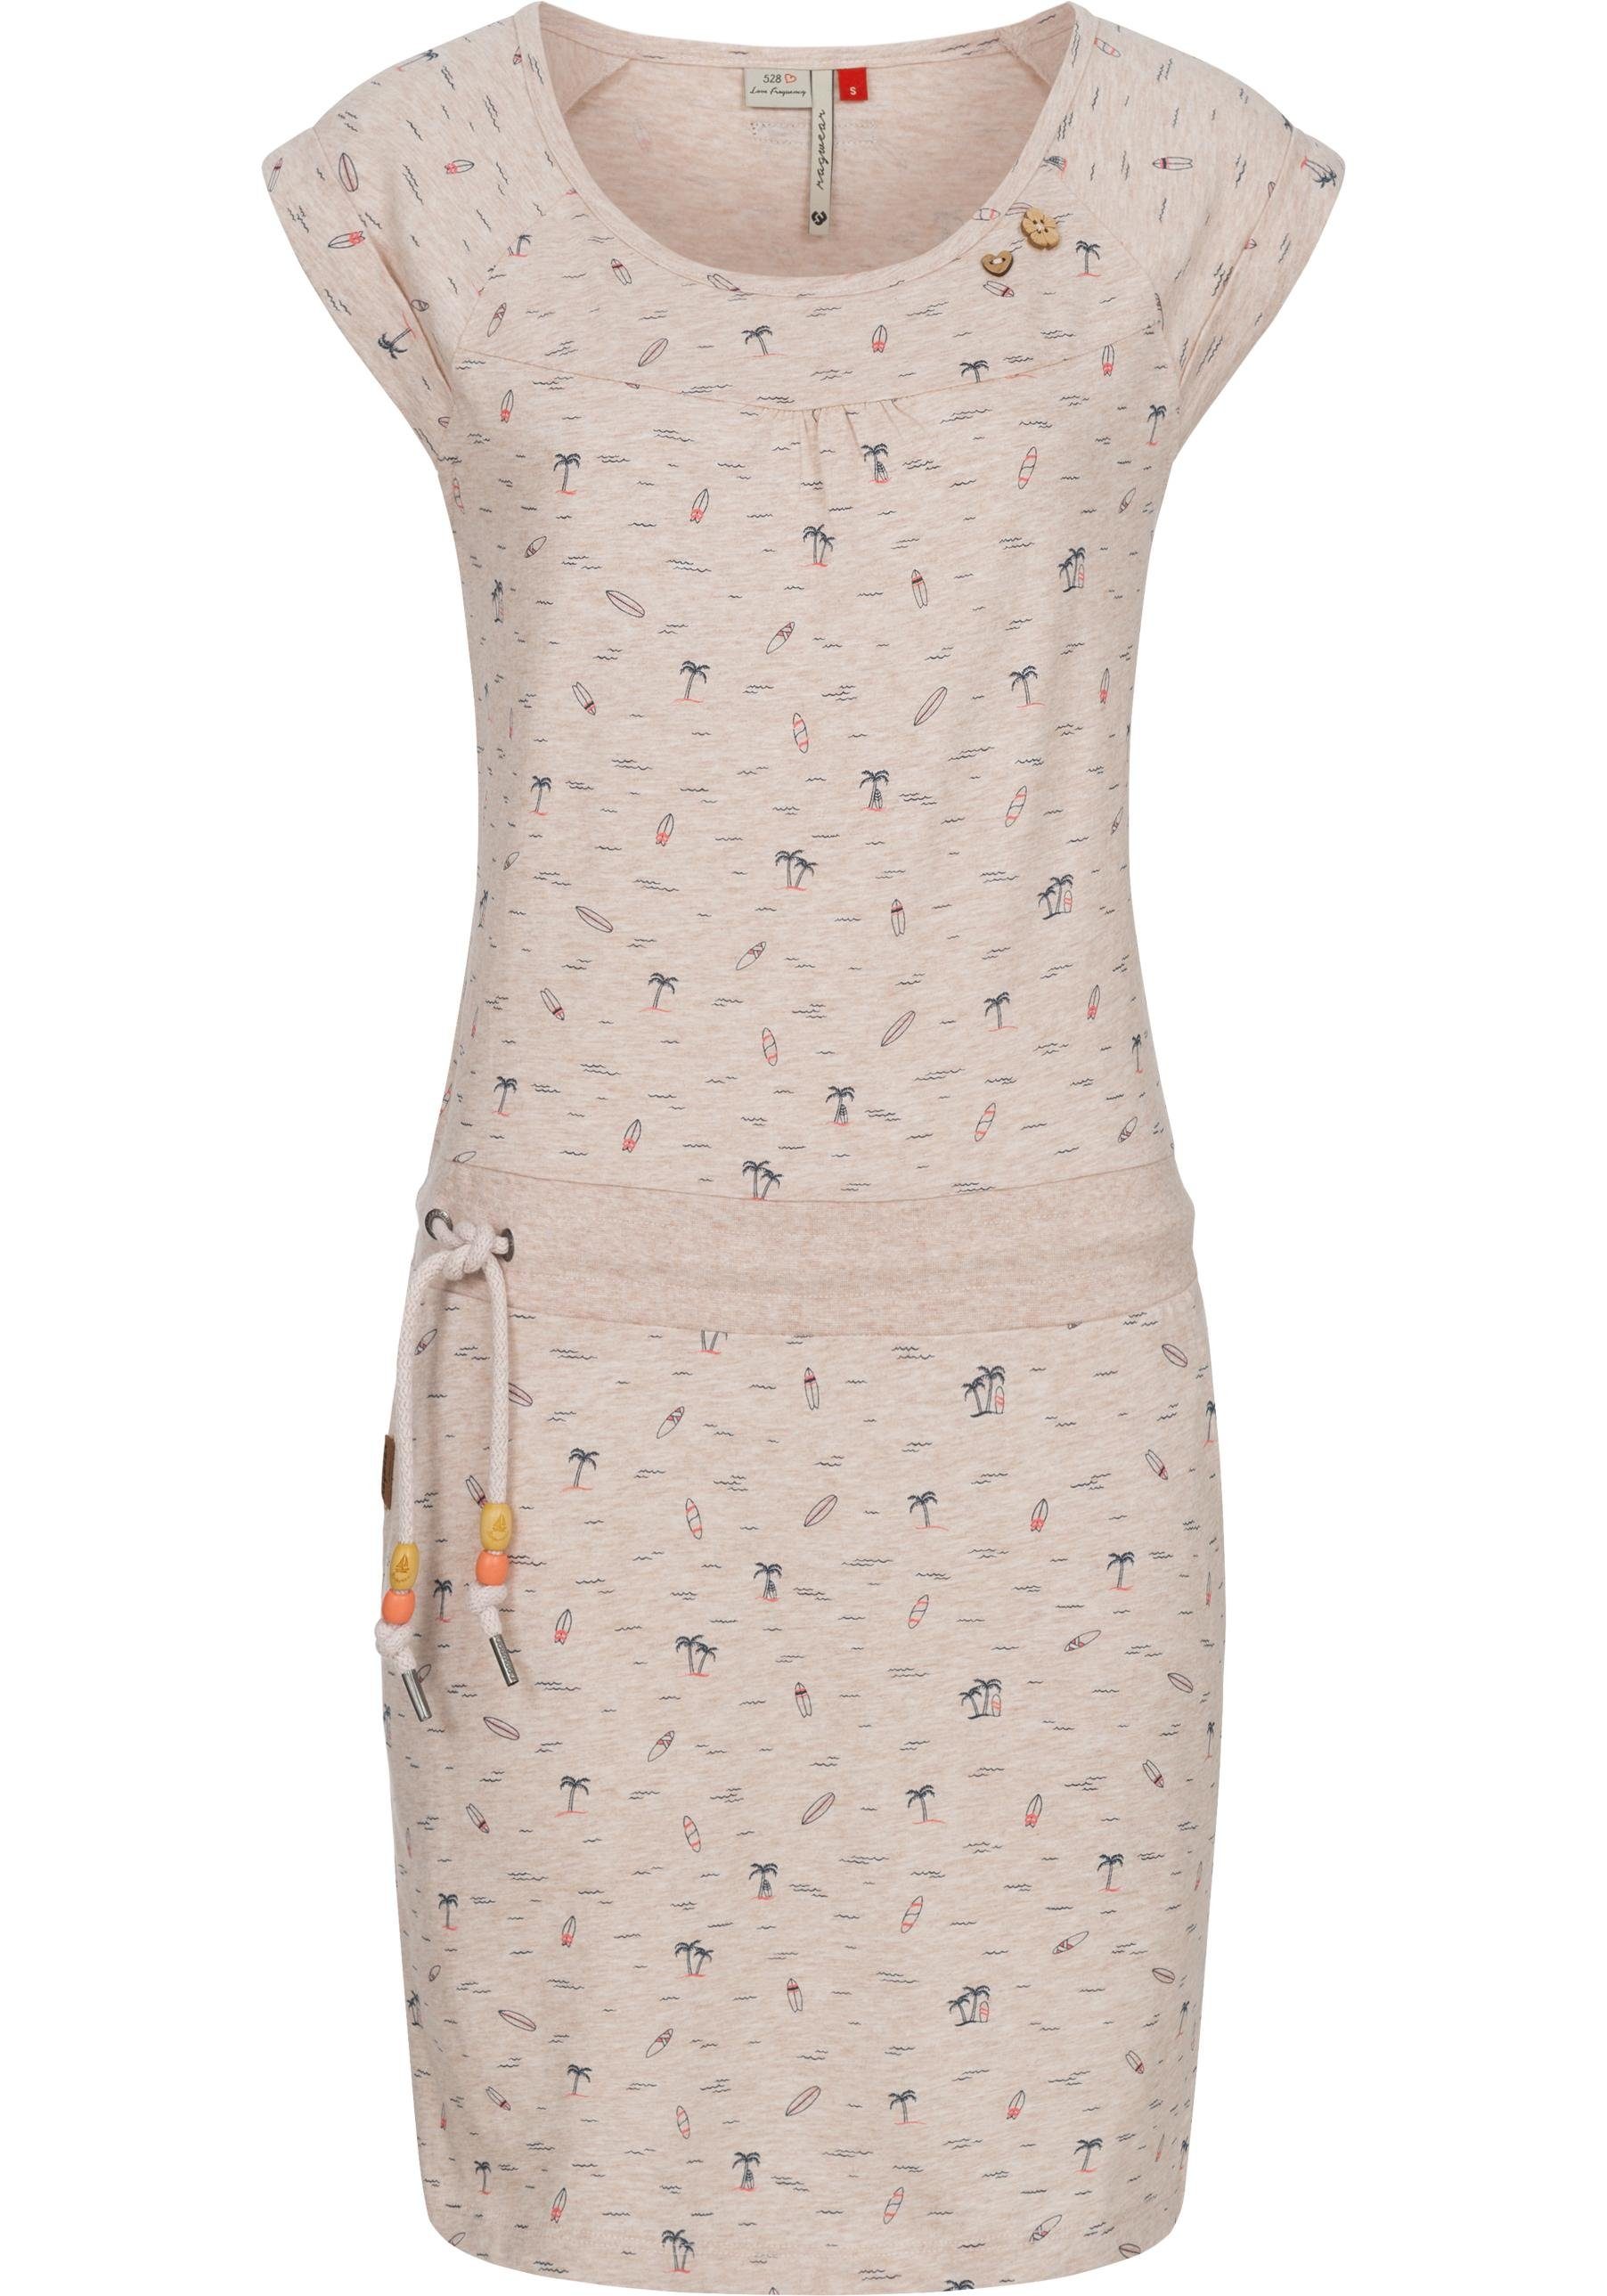 Ragwear Sommerkleid Penelope leichtes Baumwoll Kleid mit Print hellbeige